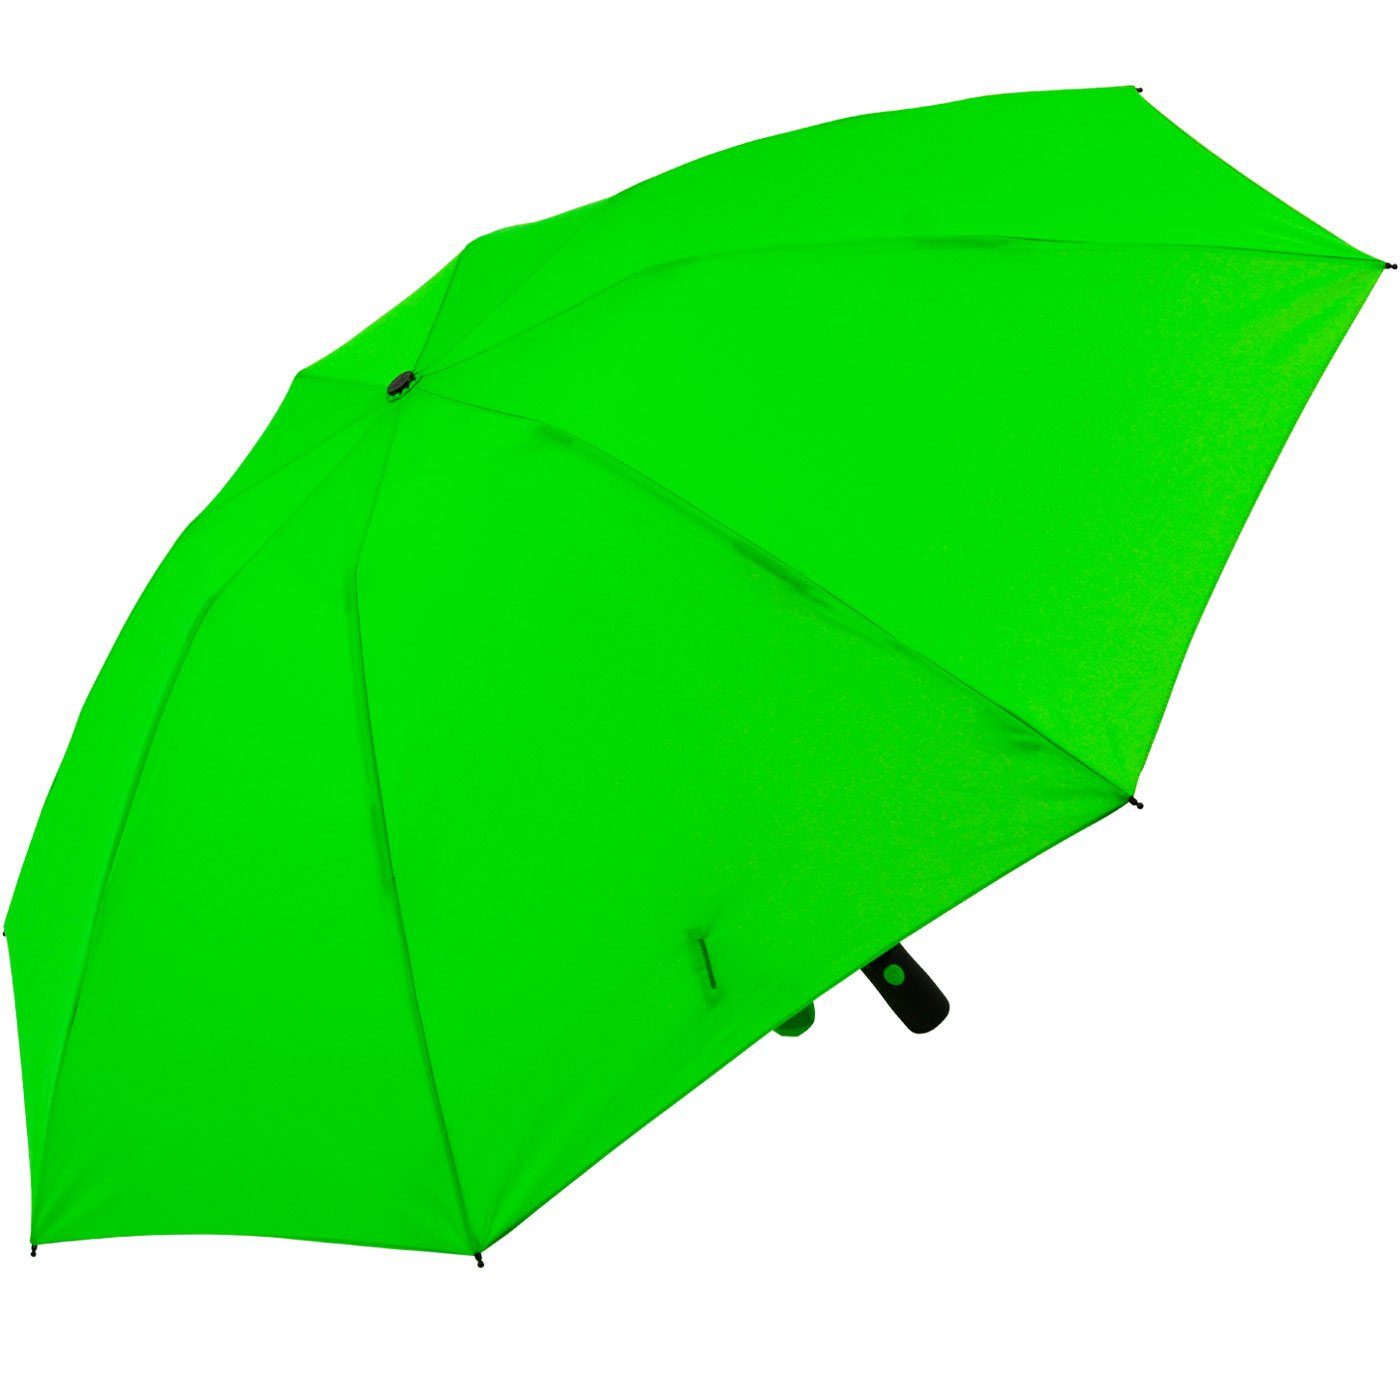 Reverse Speichen bunten mit stabilen neon-grün Taschenregenschirm öffnender Fiberglas-Automatiksch, iX-brella umgekehrt